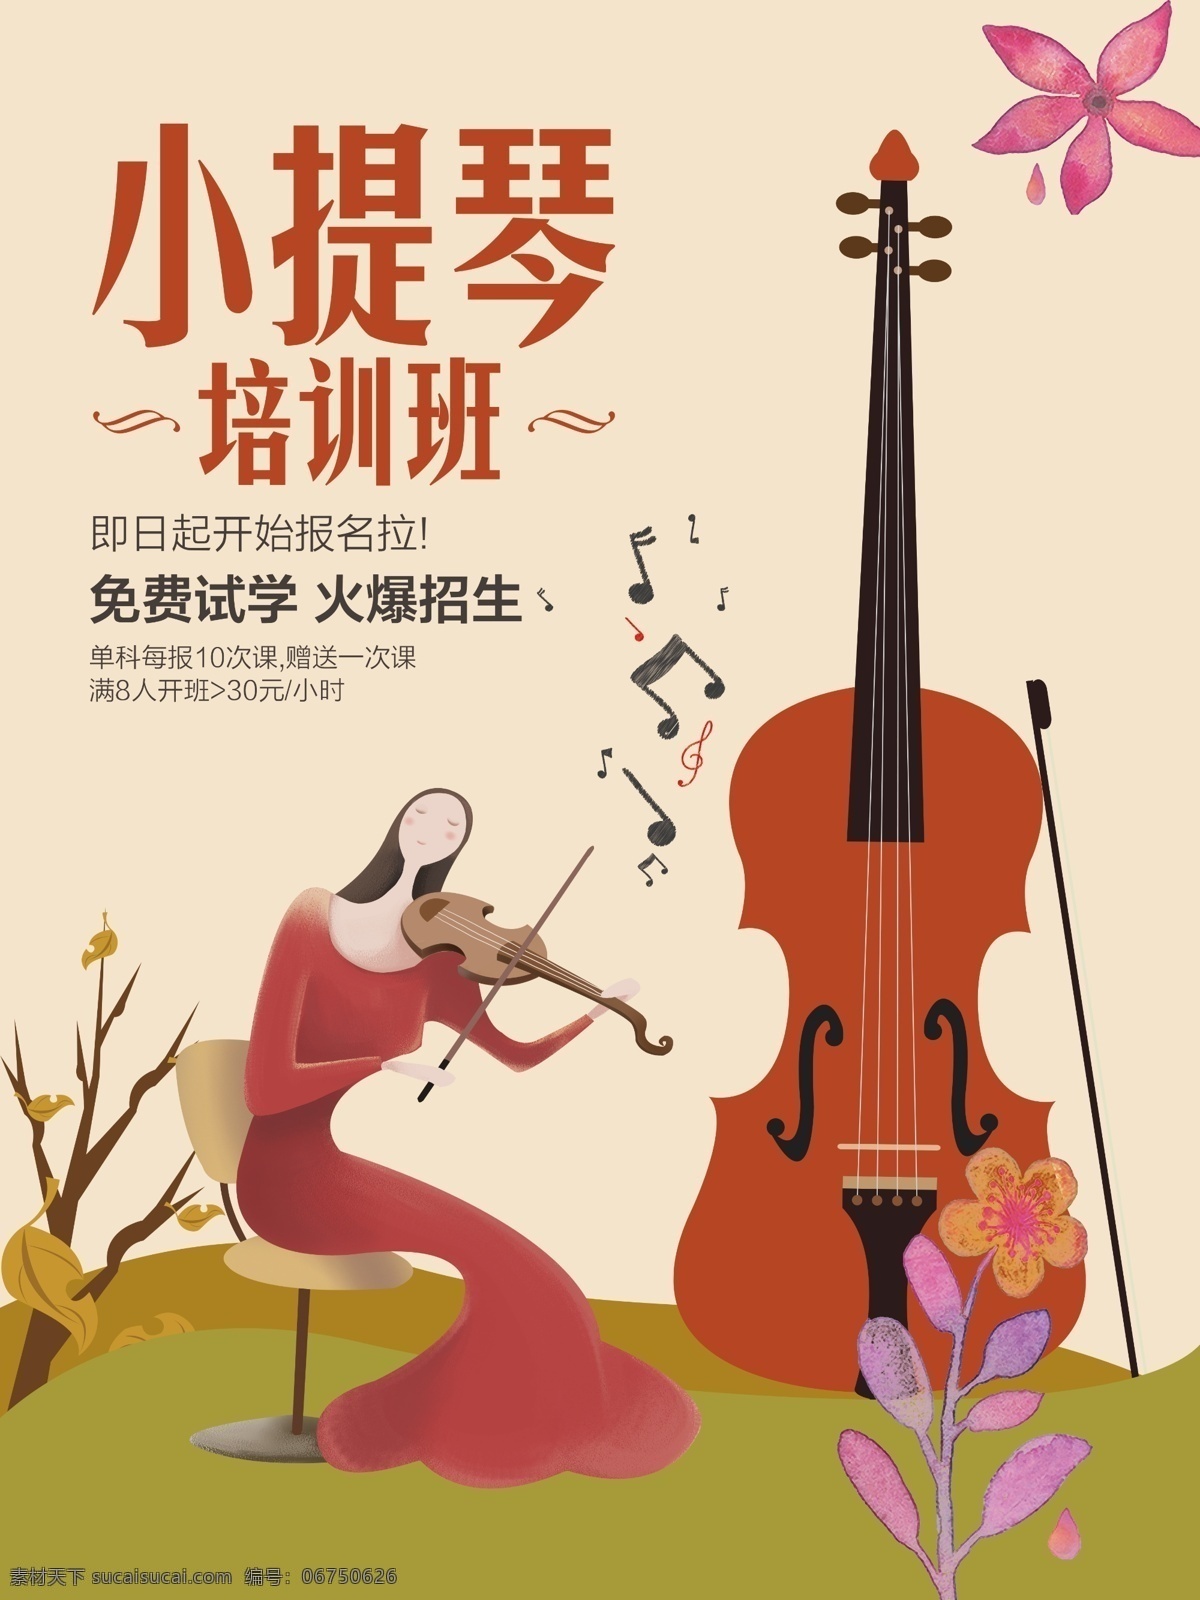 小提琴 培训班 海报 psd素材 棕色 乐器 培训班海报 音乐 典雅 创意